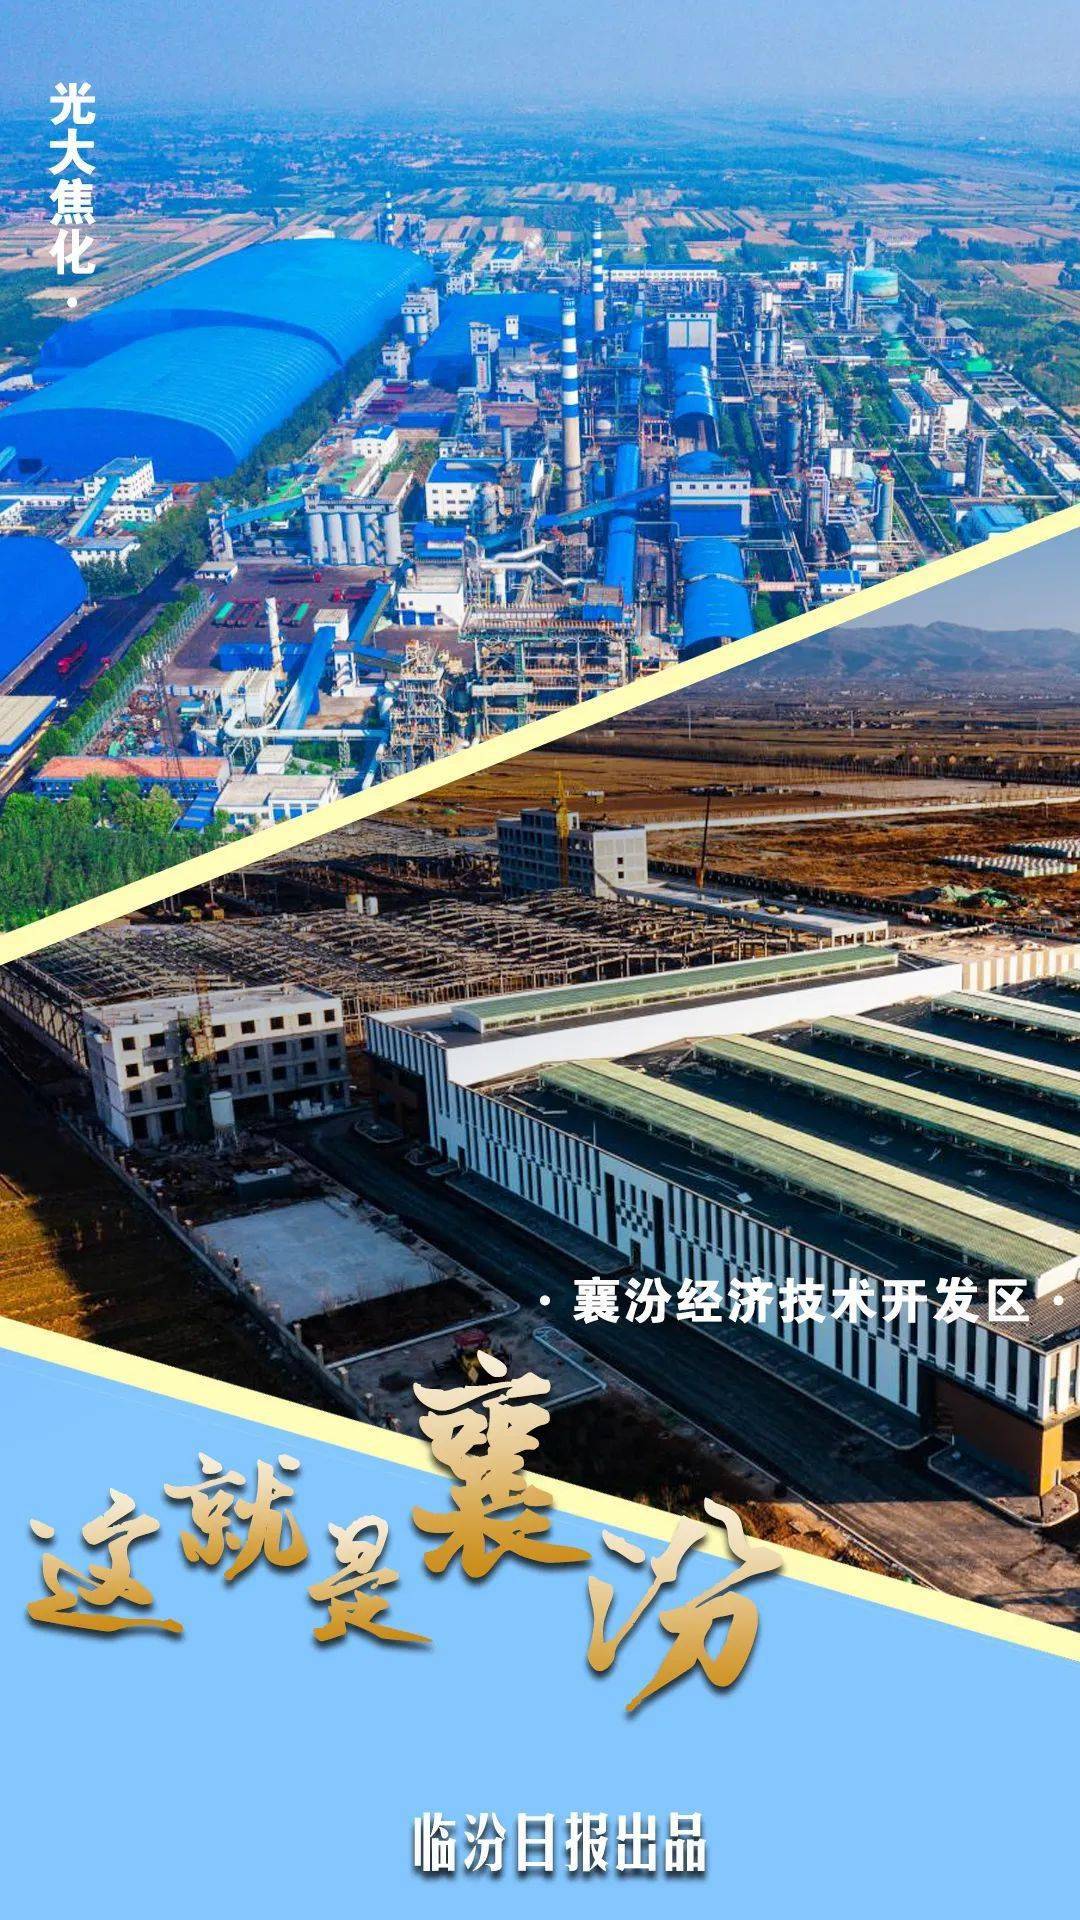 清洁生产的山西样本一家打造成国家aaa级旅游景区的工厂襄汾经济技术